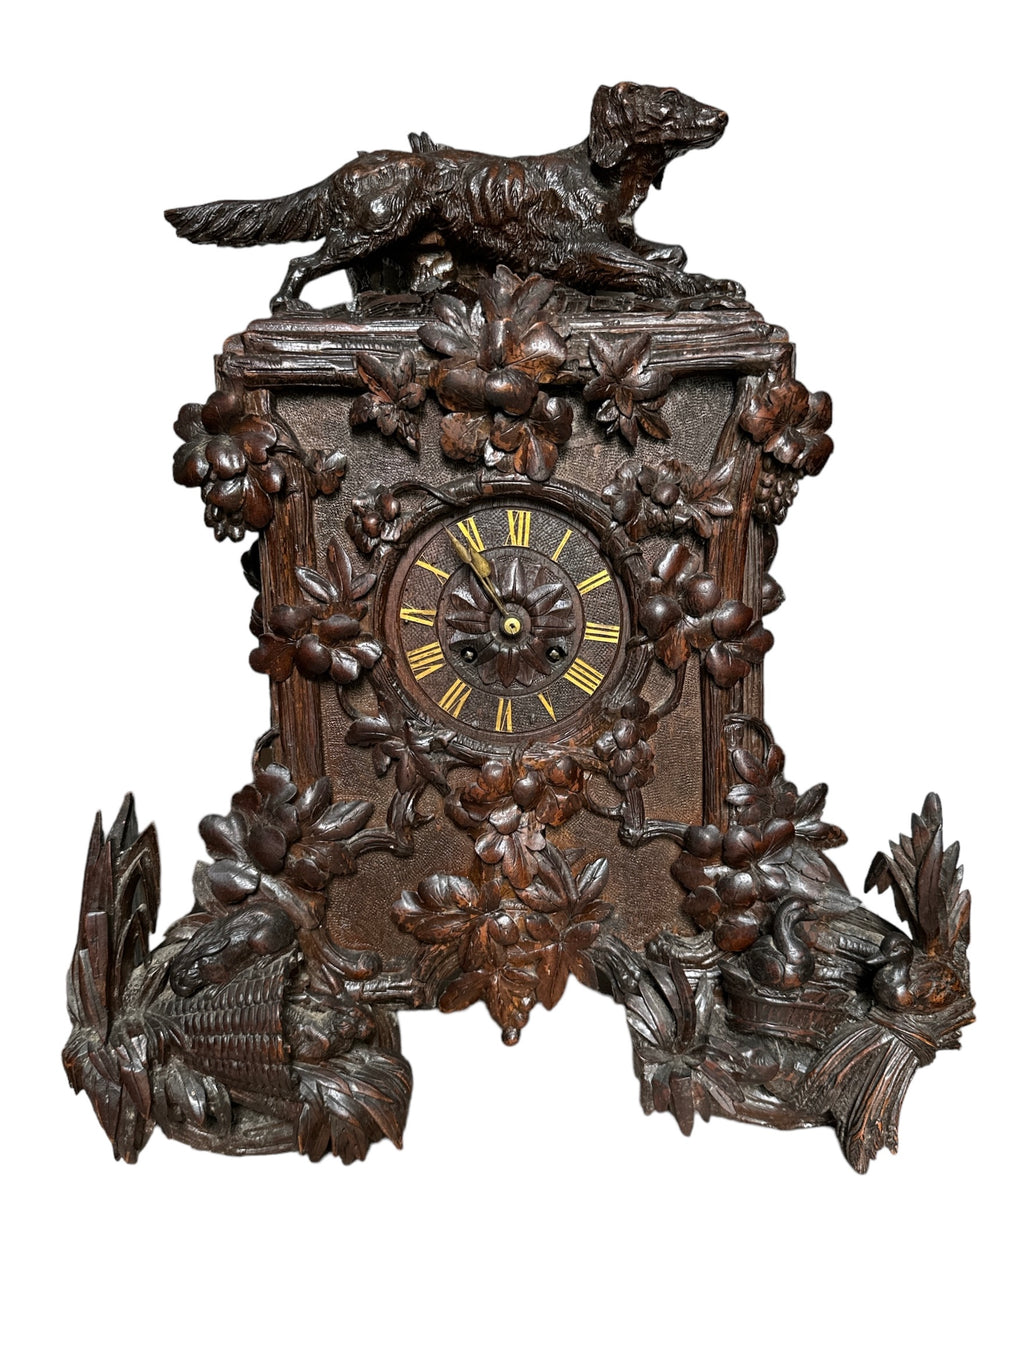 Black Forest Mantle Clock